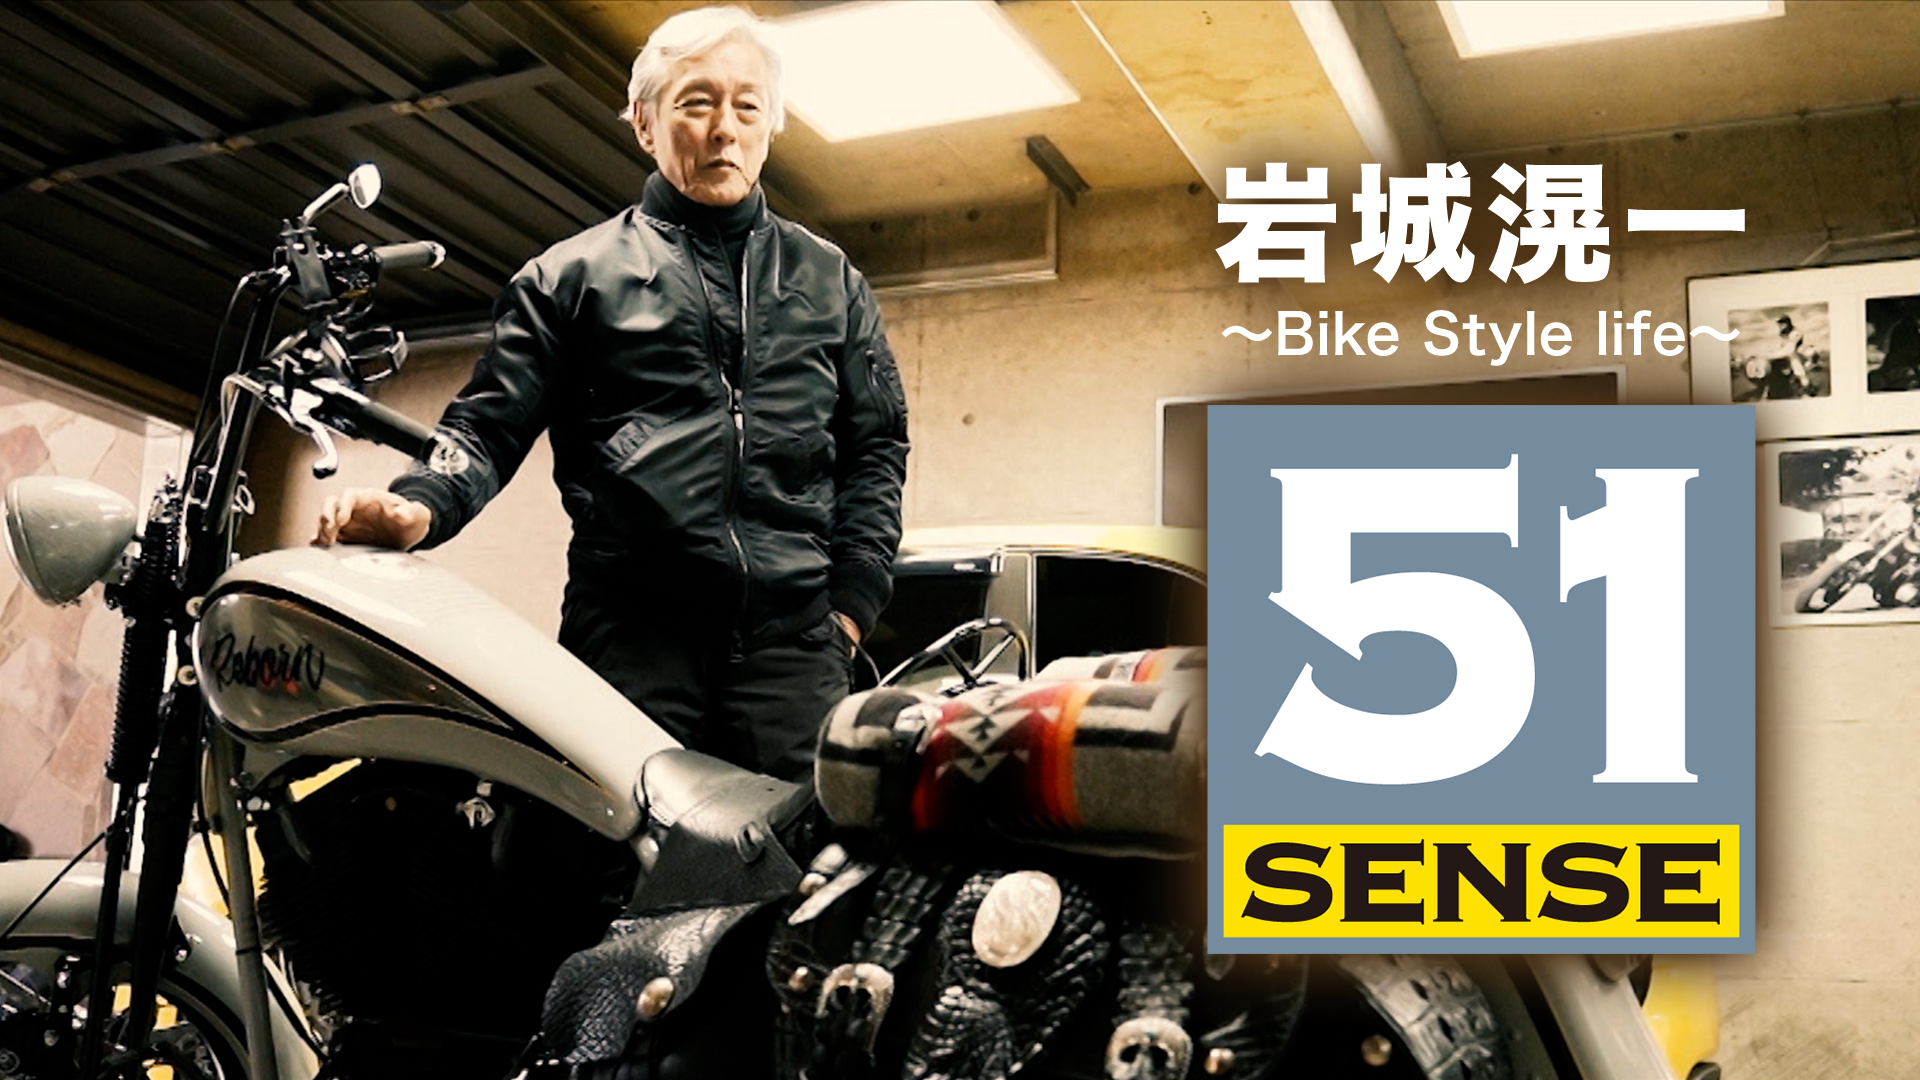 岩城滉一 ~Bike Style life~51 SENSE(TV番組・エンタメ / 2021) - 動画 